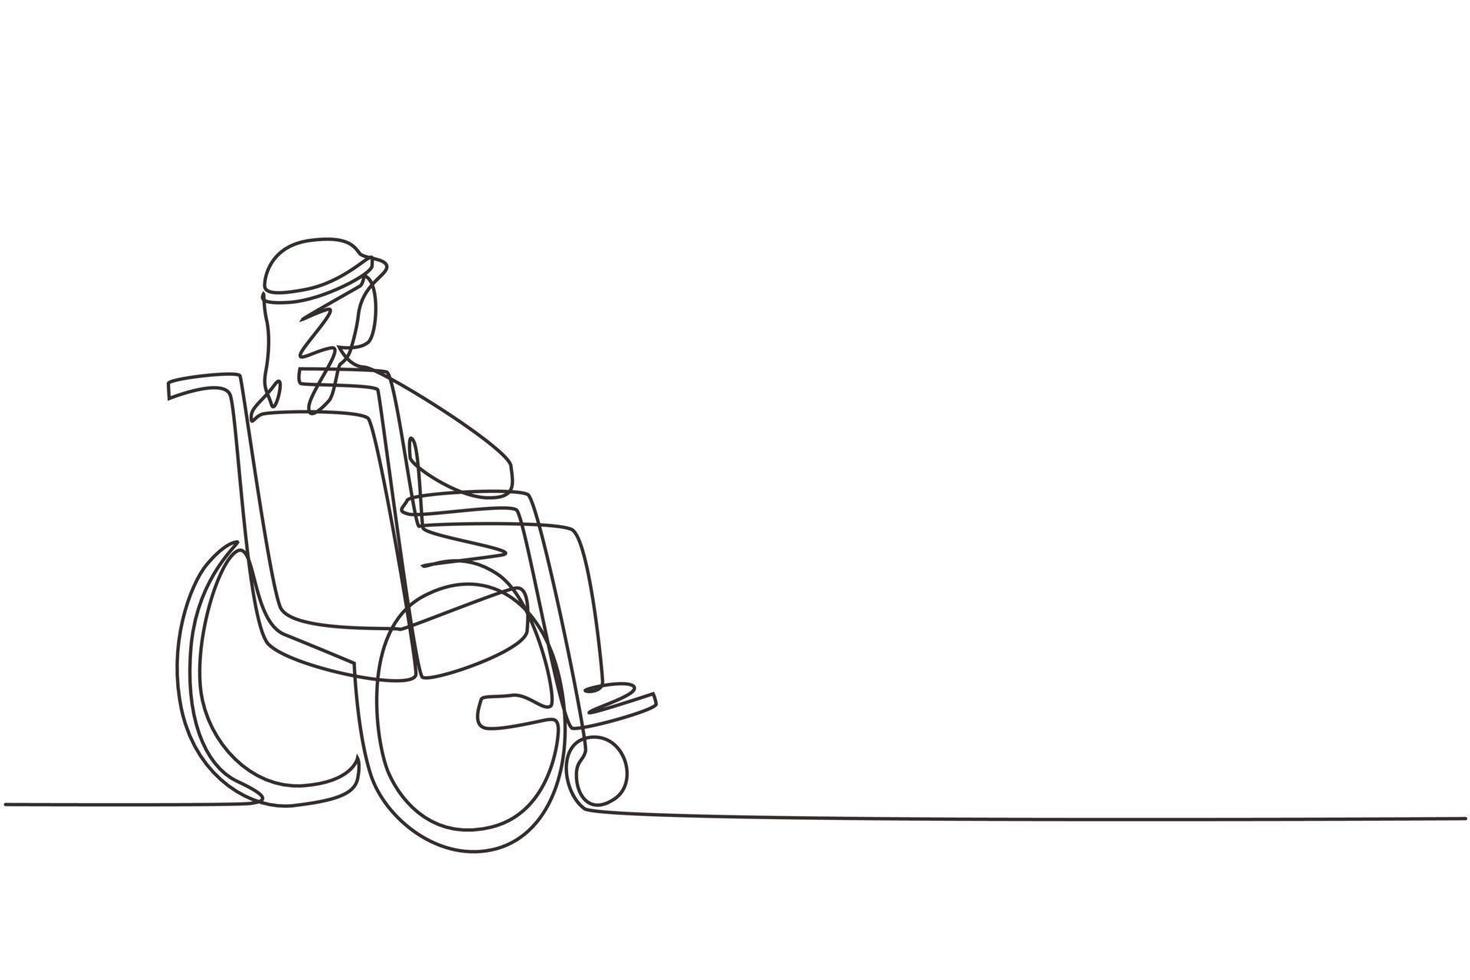 un disegno continuo di una linea sul retro di un vecchio arabo solitario seduto su una sedia a rotelle, che guarda le foglie autunnali secche lontane all'esterno. solitario, sconsolato, desolato, solitario. vettore di disegno a linea singola